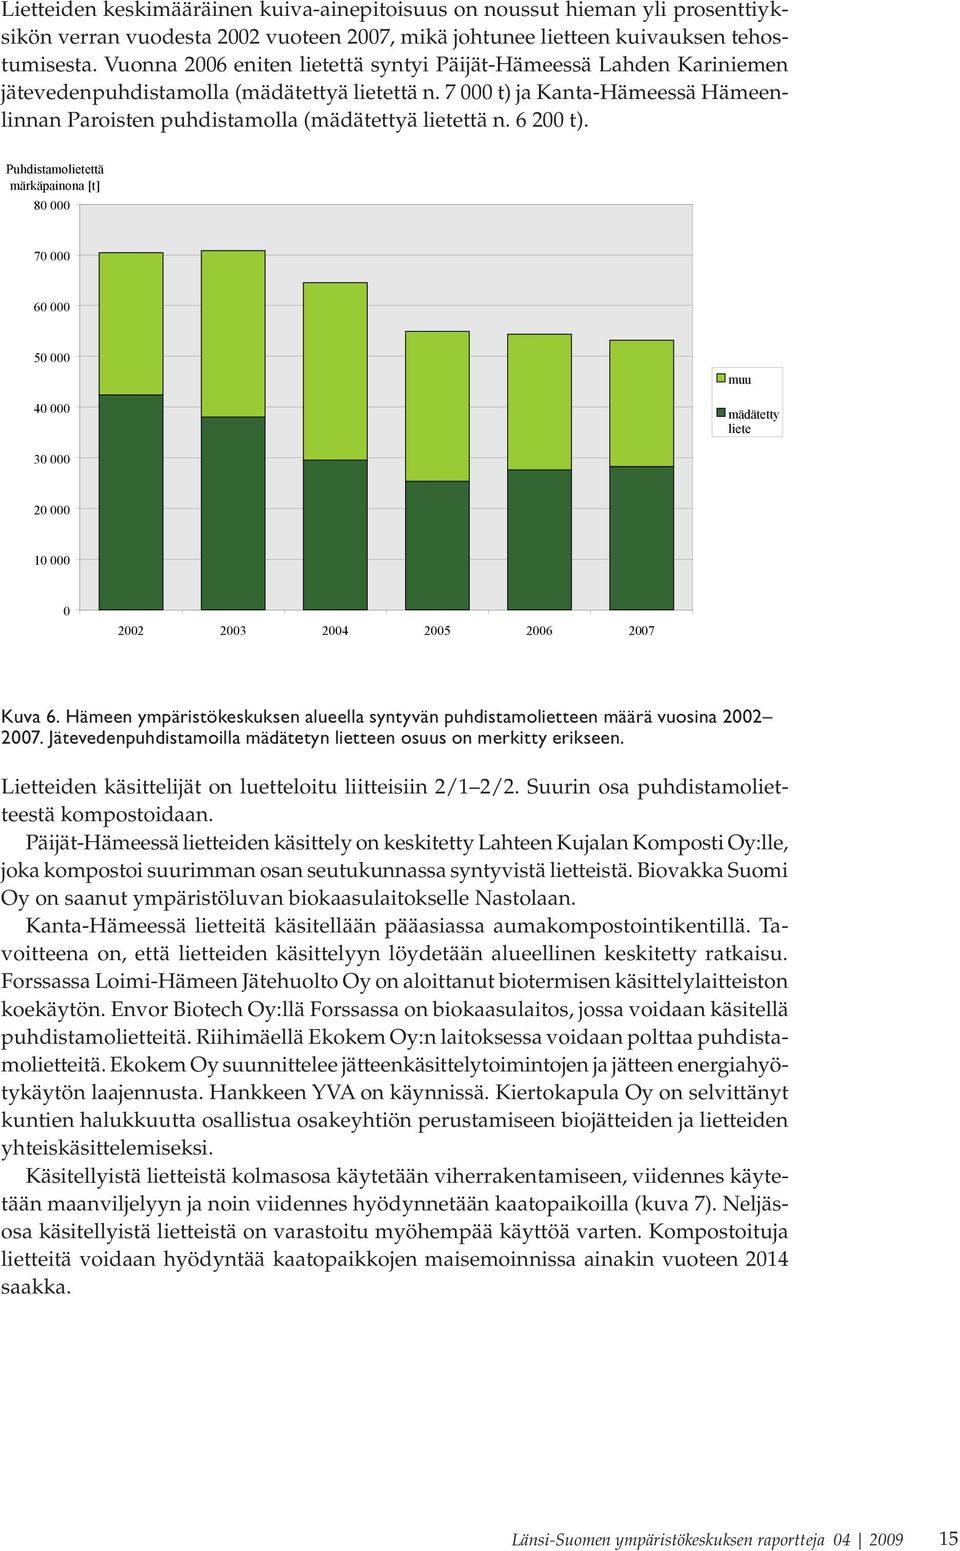 7 000 t) ja Kanta-Hämeessä Hämeenlinnan Paroisten puhdistamolla (mädätettyä lietettä n. 6 200 t).